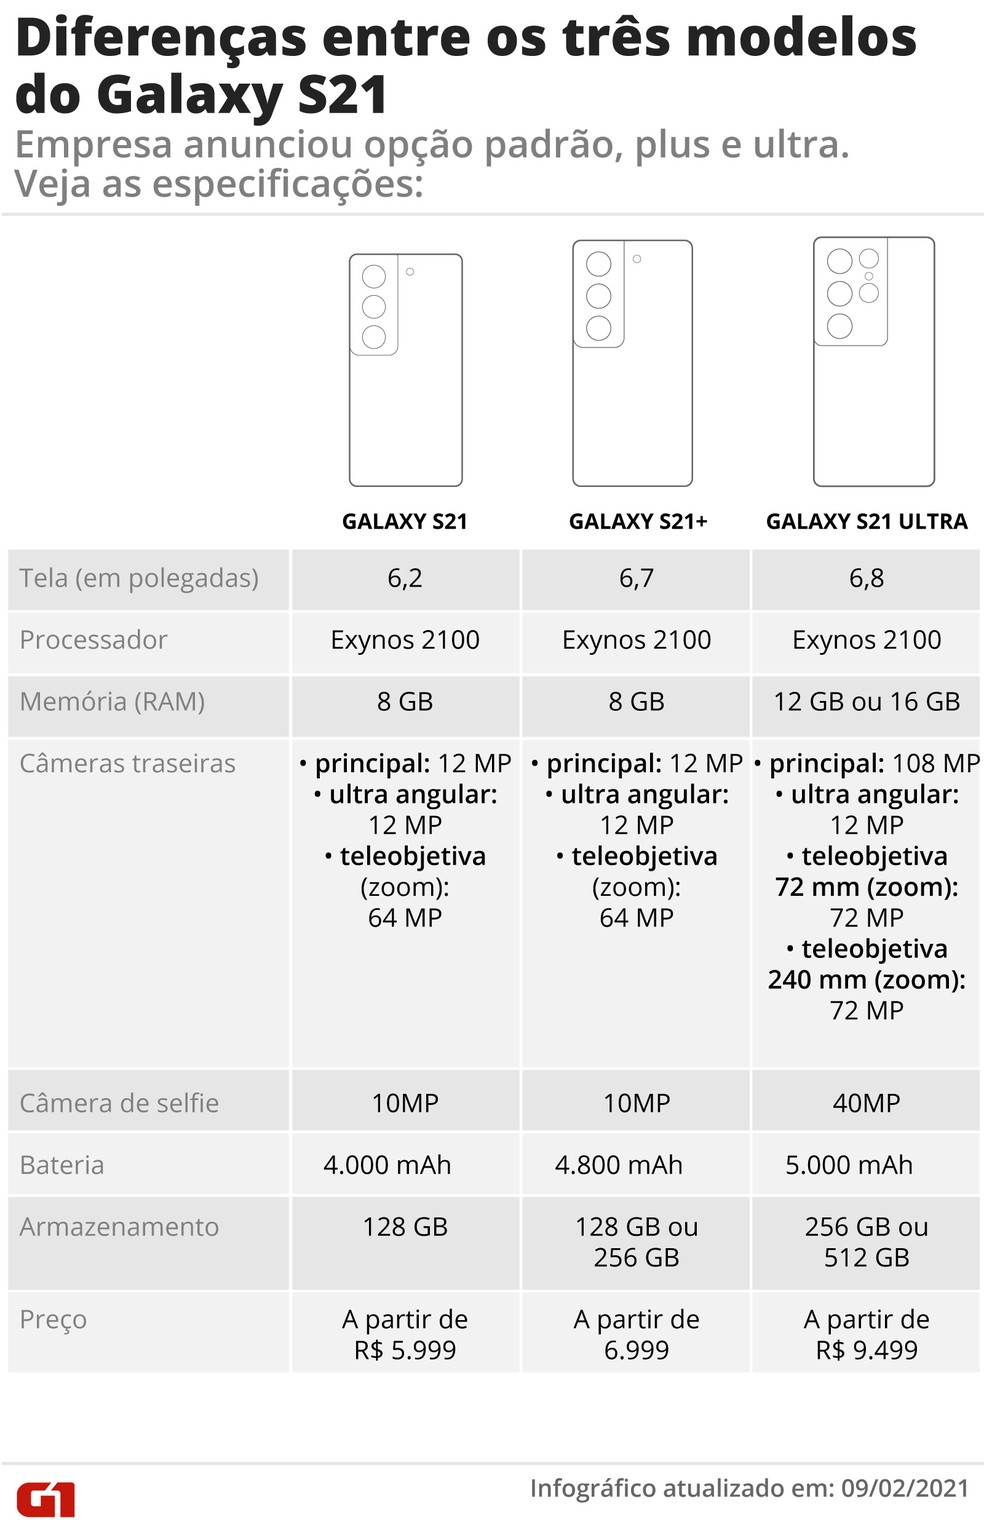 Infogrfico mostra as caractersticas da linha Samsung Galaxy S21.  Foto: Editoria de Arte/G1